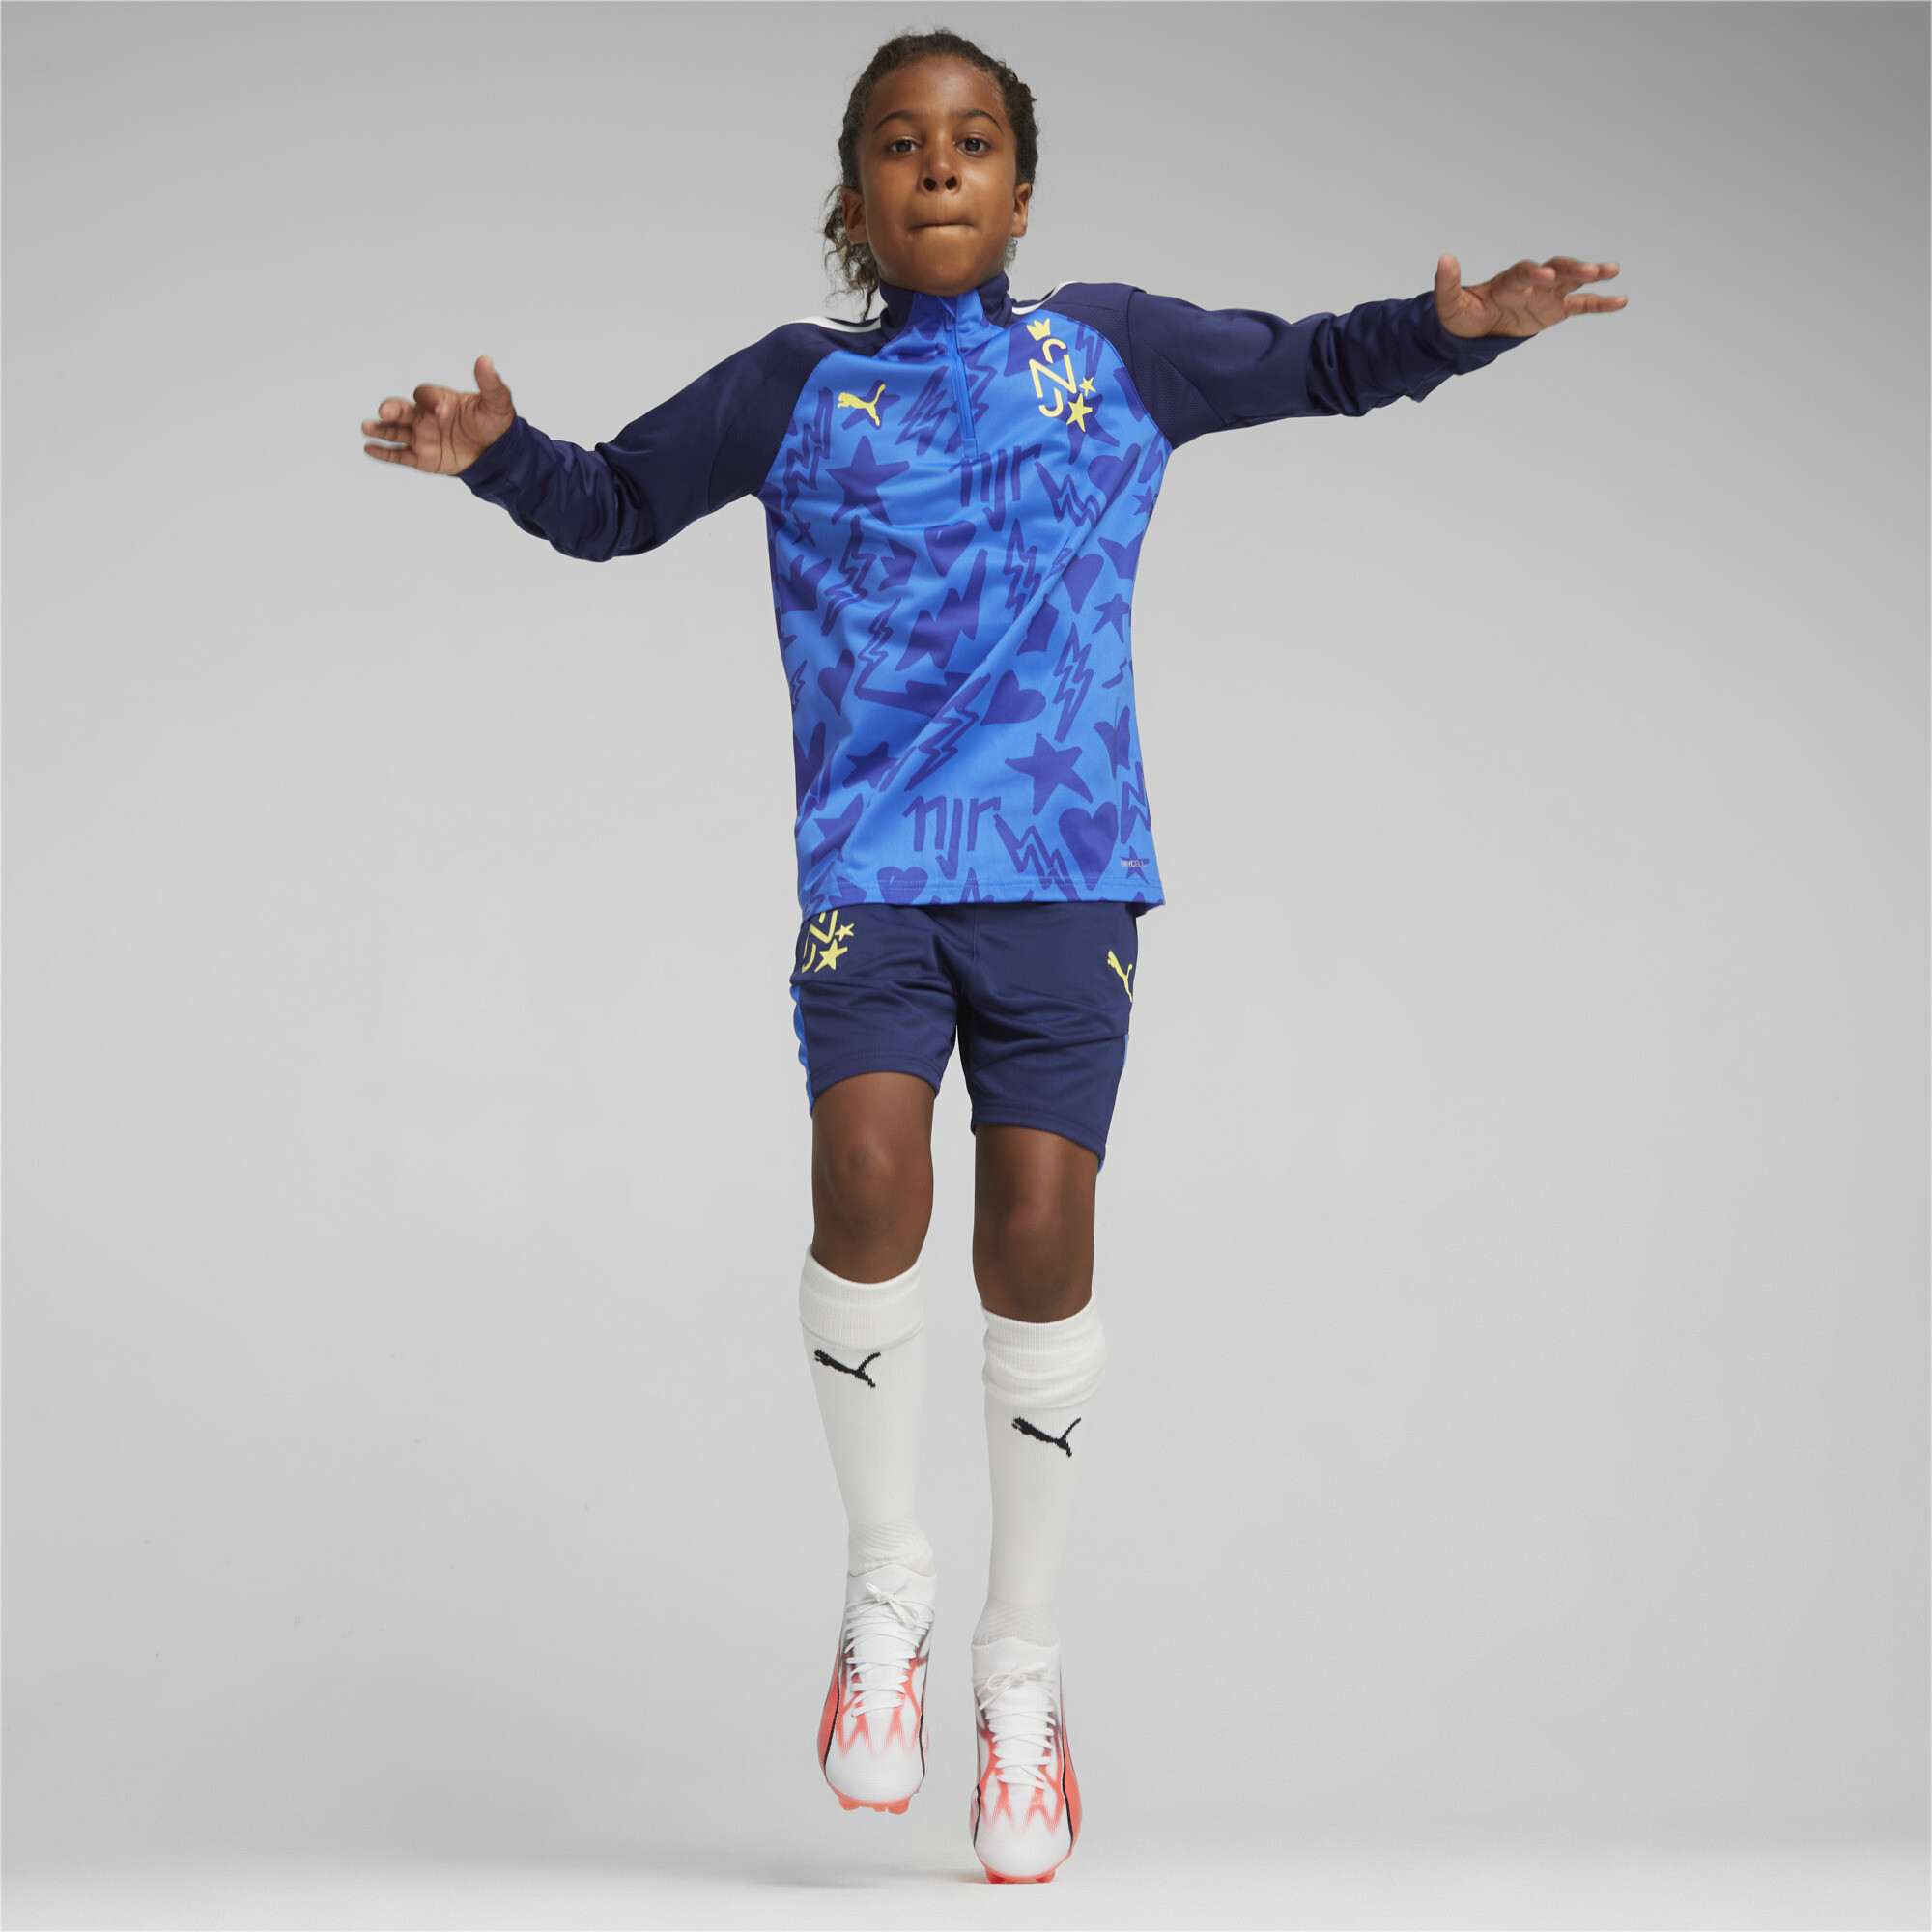 PUMA Neymar Jr Football Track Jacket In Blue, Size 15-16 Youth